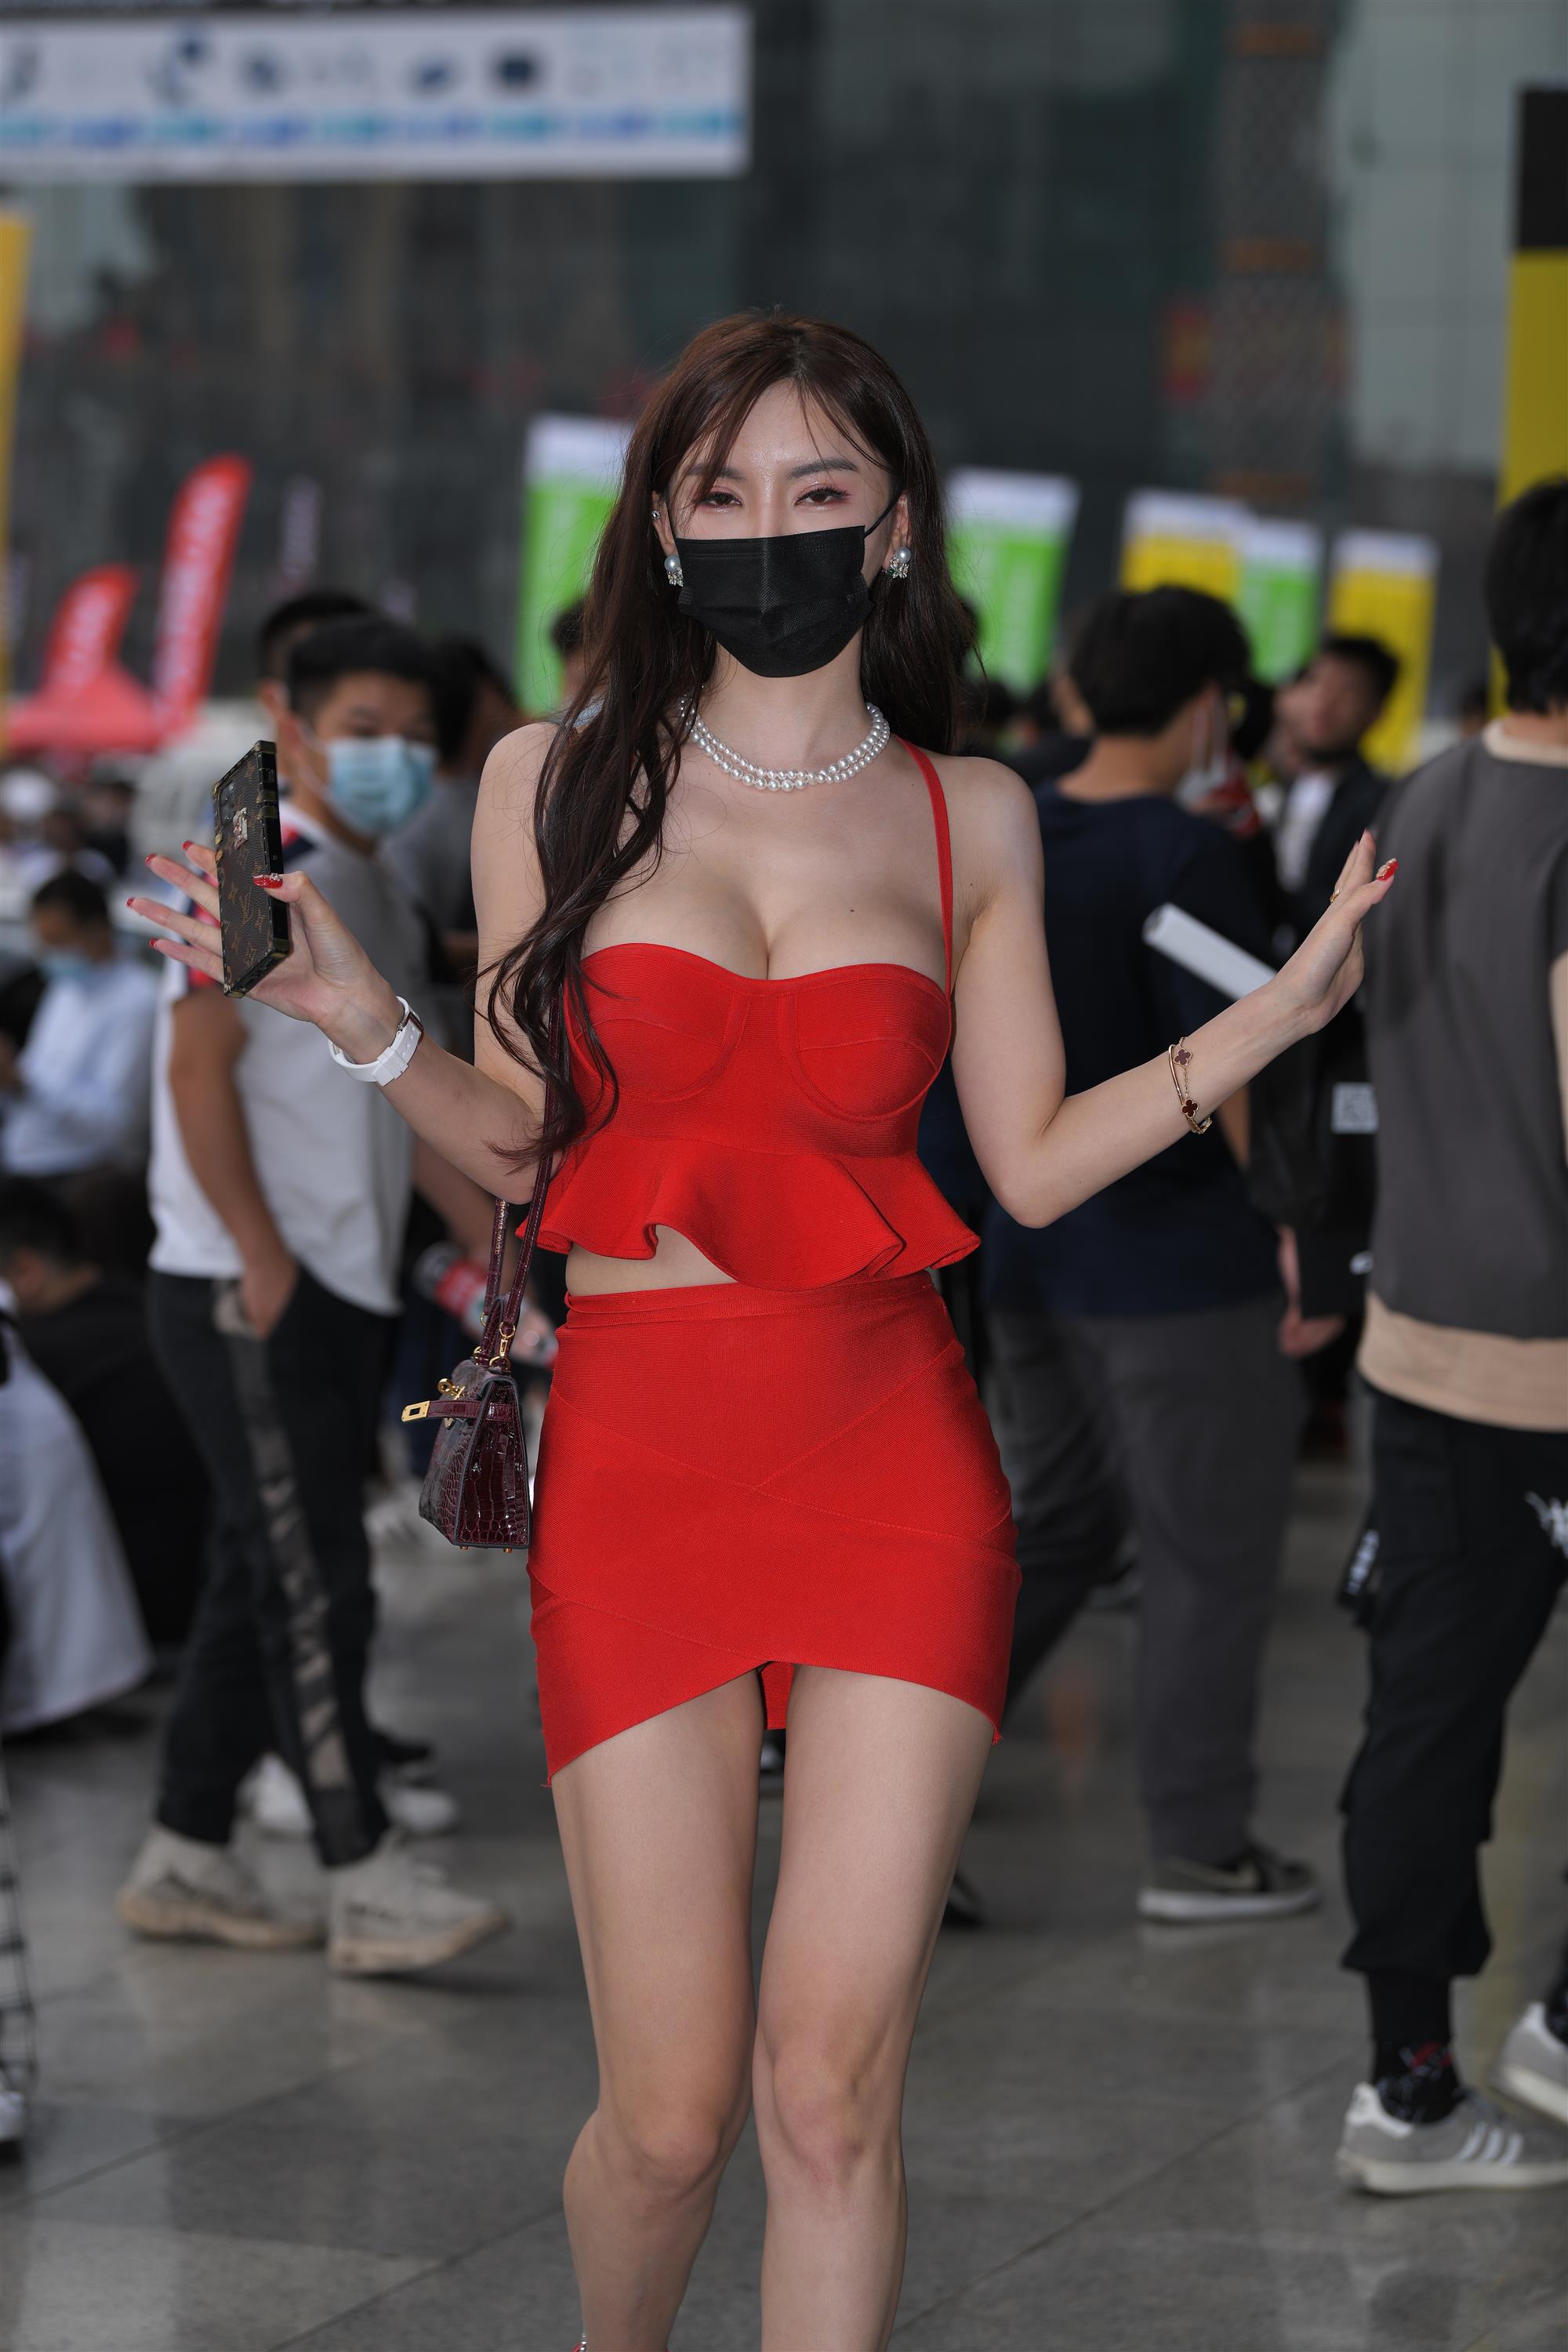 Street Red miniskirt - 26.jpg